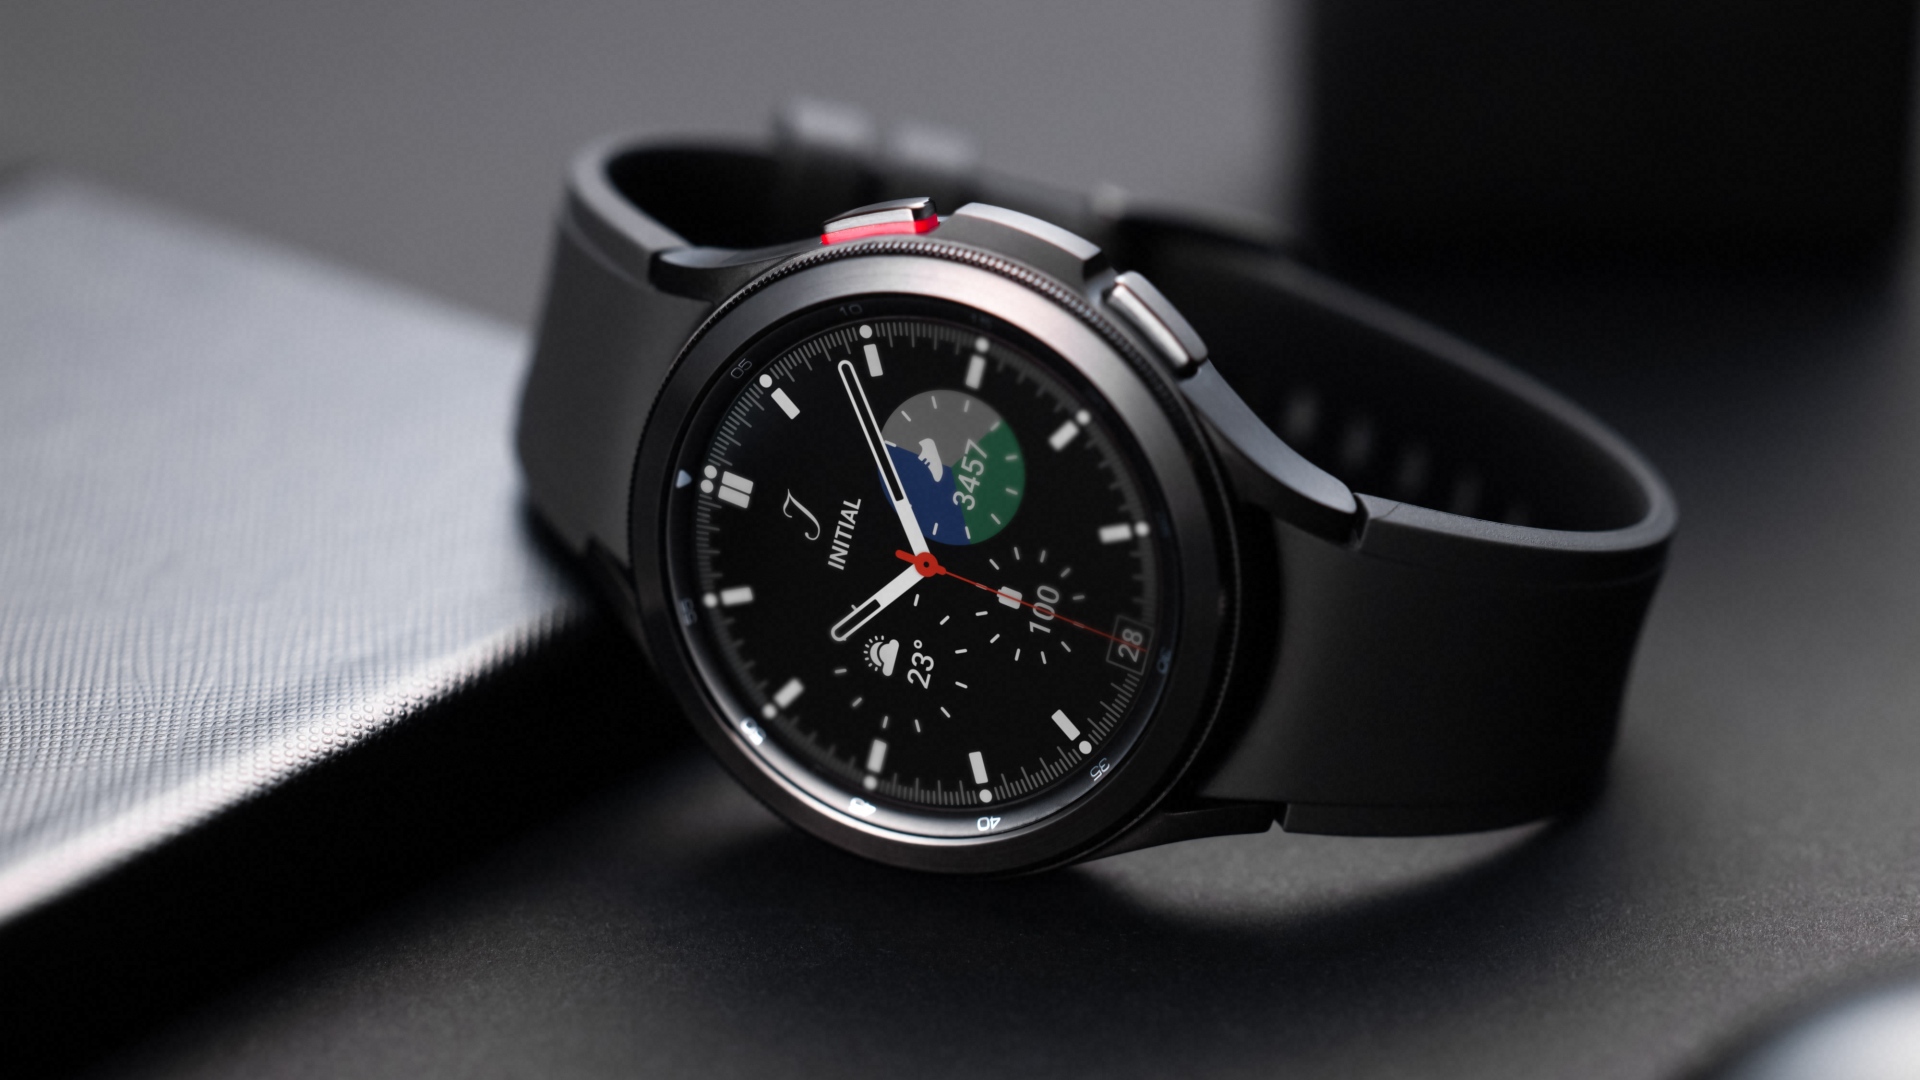 Galaxy Watch Plugin: Galaxy Watch Plugin giúp tối ưu hóa và tăng tính năng cho chiếc đồng hồ Galaxy Watch của bạn. Với nhiều tính năng hữu ích, Plugin giúp bạn quản lý các ứng dụng và thông báo một cách dễ dàng hơn. Hãy tải xuống và trải nghiệm trên chiếc đồng hồ Samsung Galaxy Watch của bạn.